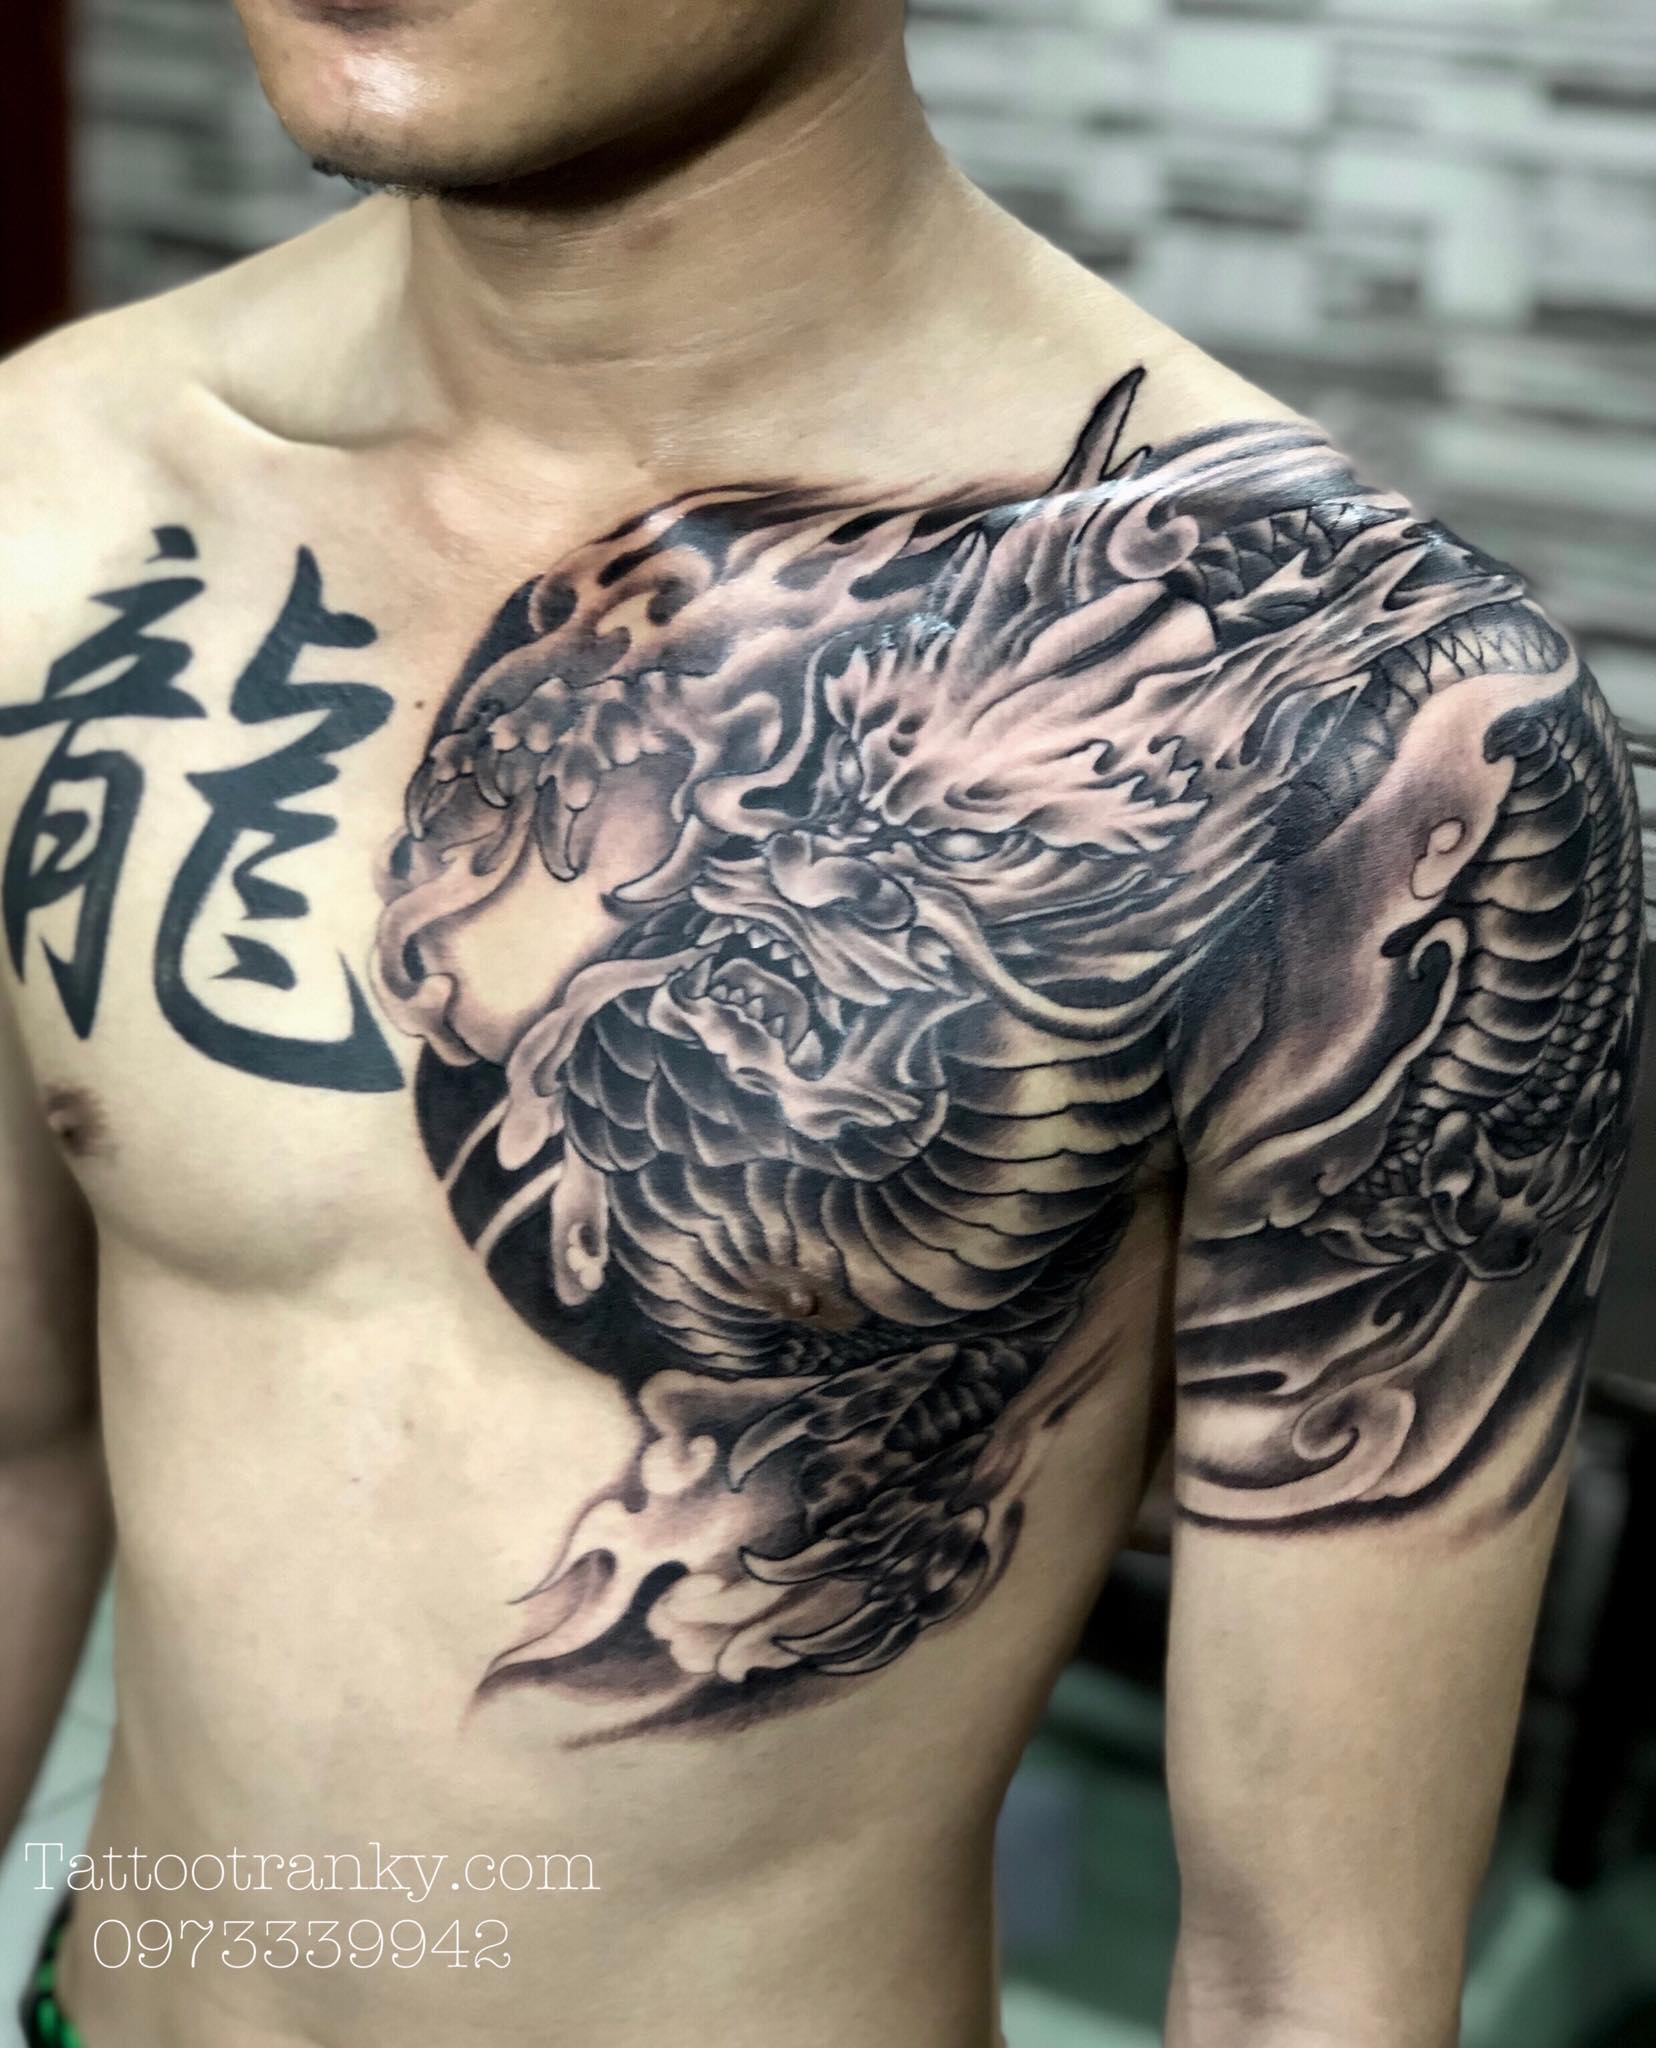 Cover hình xăm ở ngực cho anh trai  Đỗ Nhân Tattoo Studio  Facebook